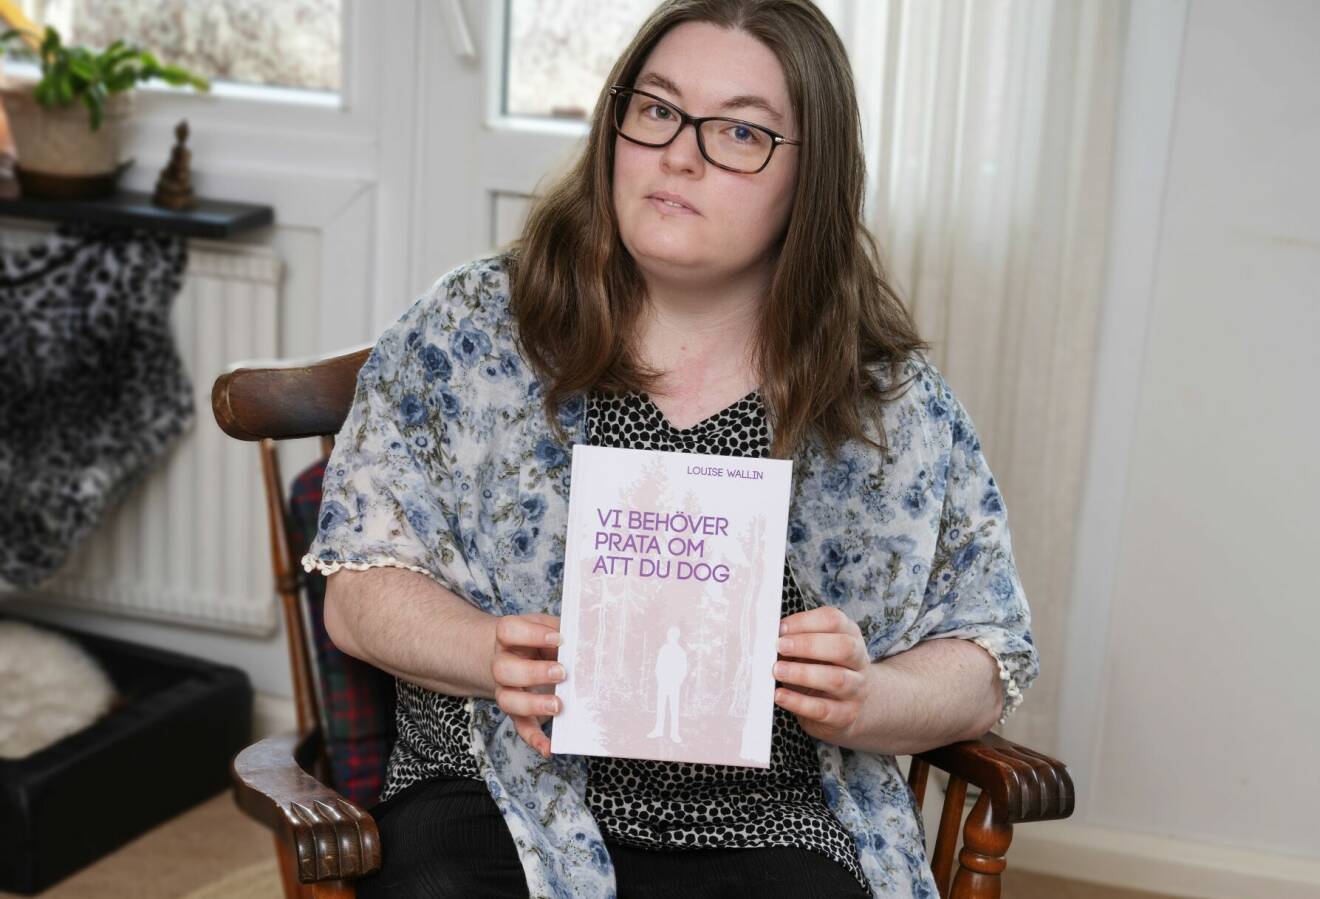 Louise sitter på en stol och håller sin bok ”Vi behöver prata om att du dog” framför sig.